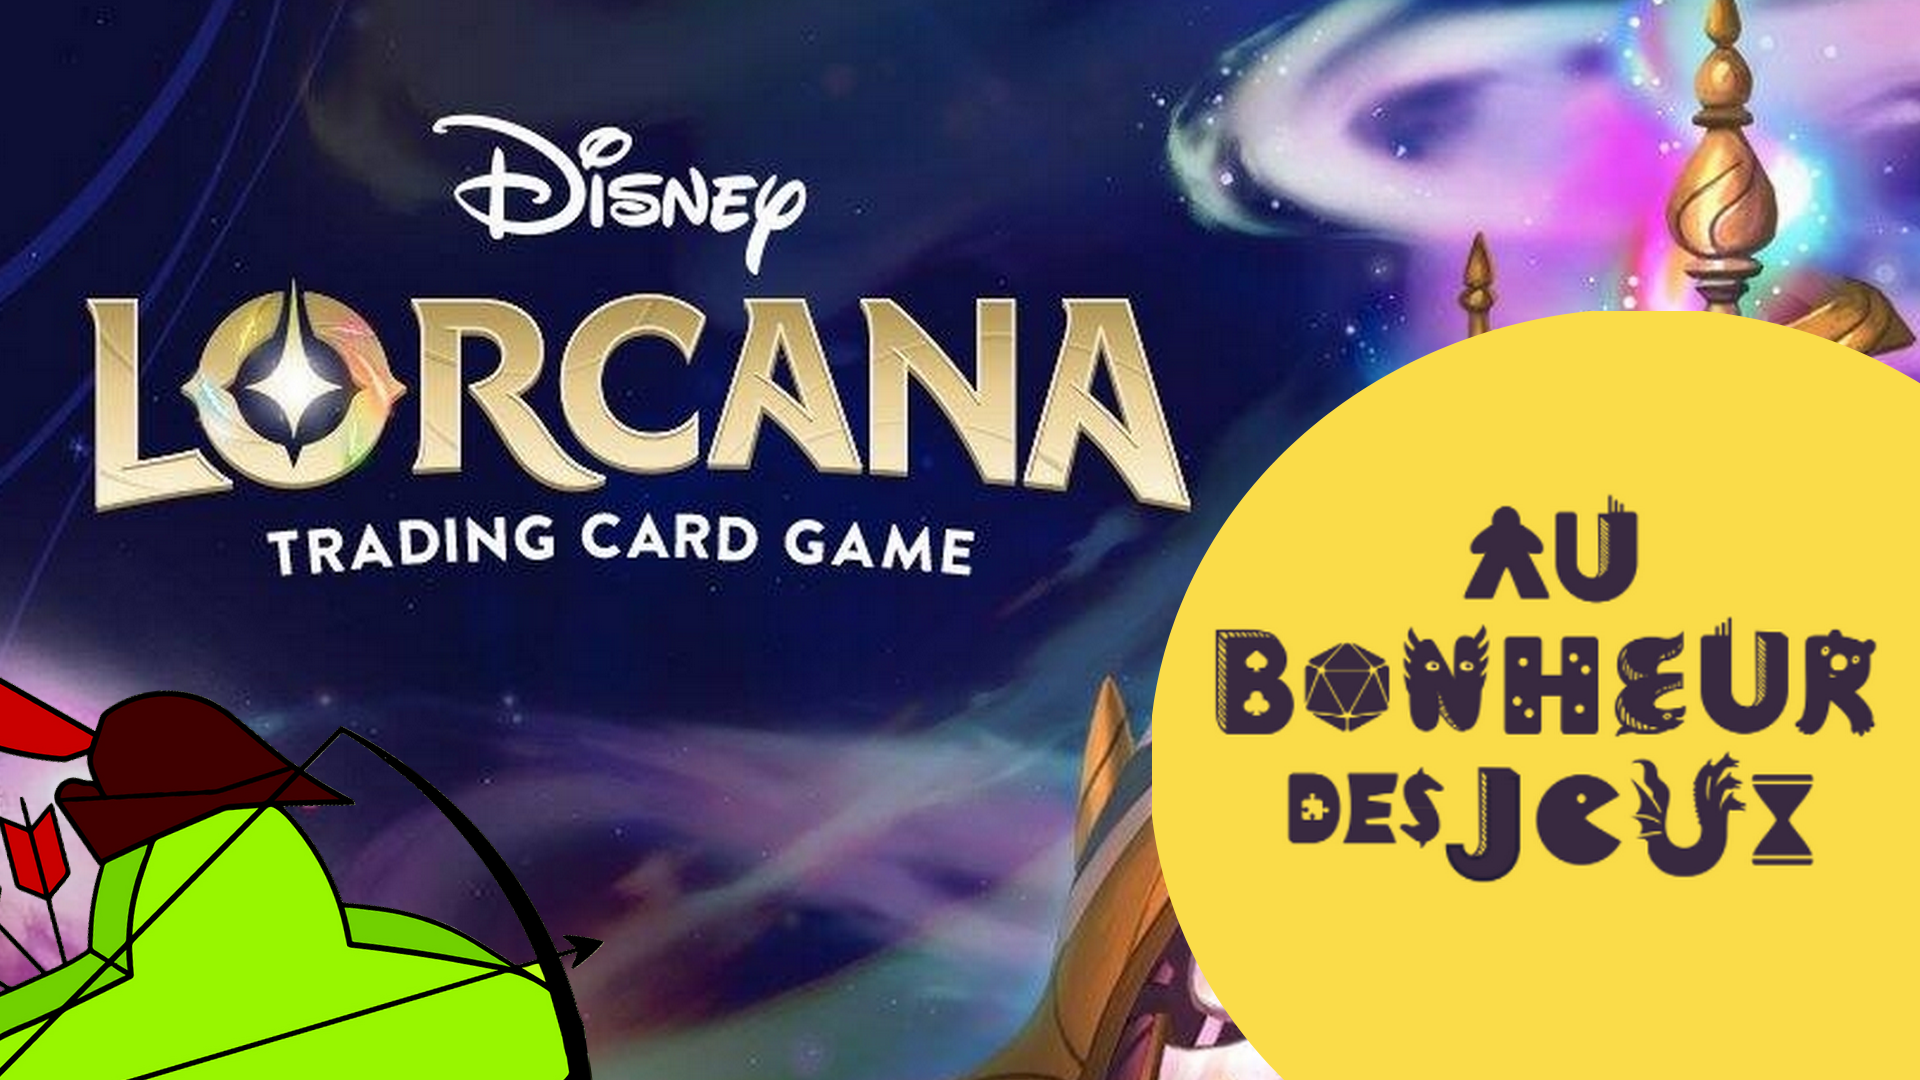 Robin des Jeux et Disney Lorcana vous proposent Tic&Tac #1